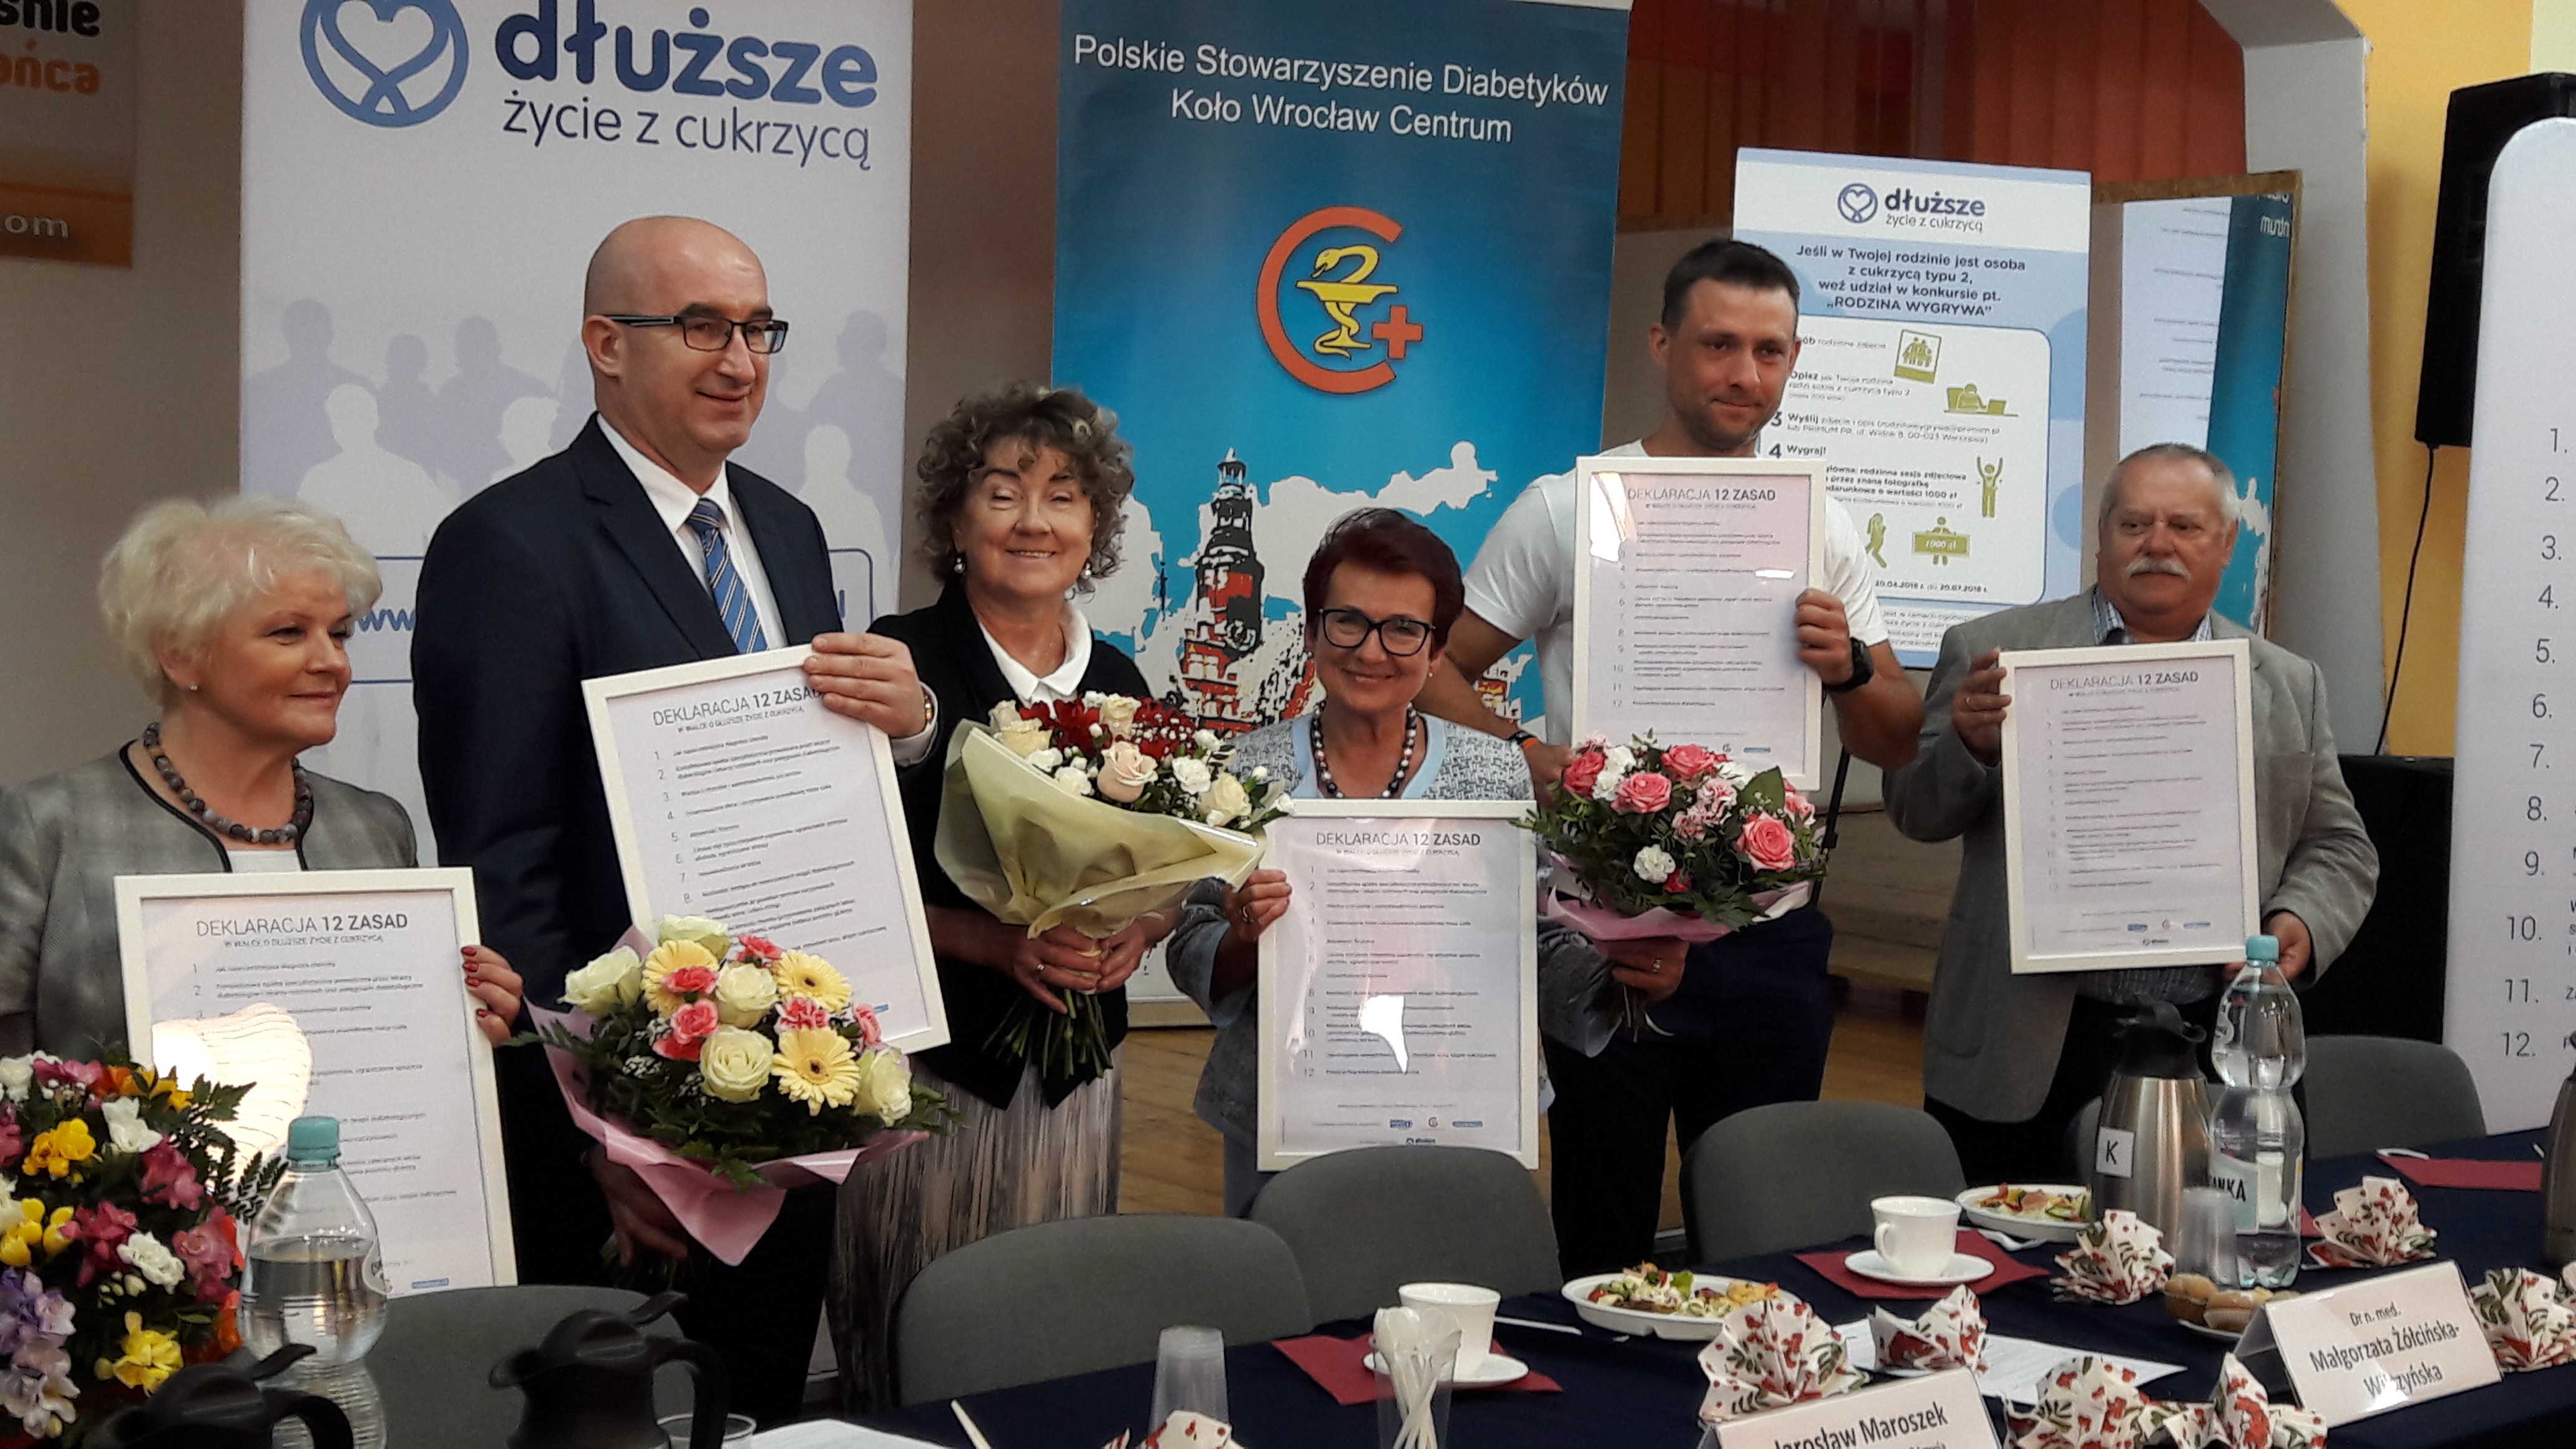 Wrocław wspiera walkę o dłuższe życie z cukrzycą